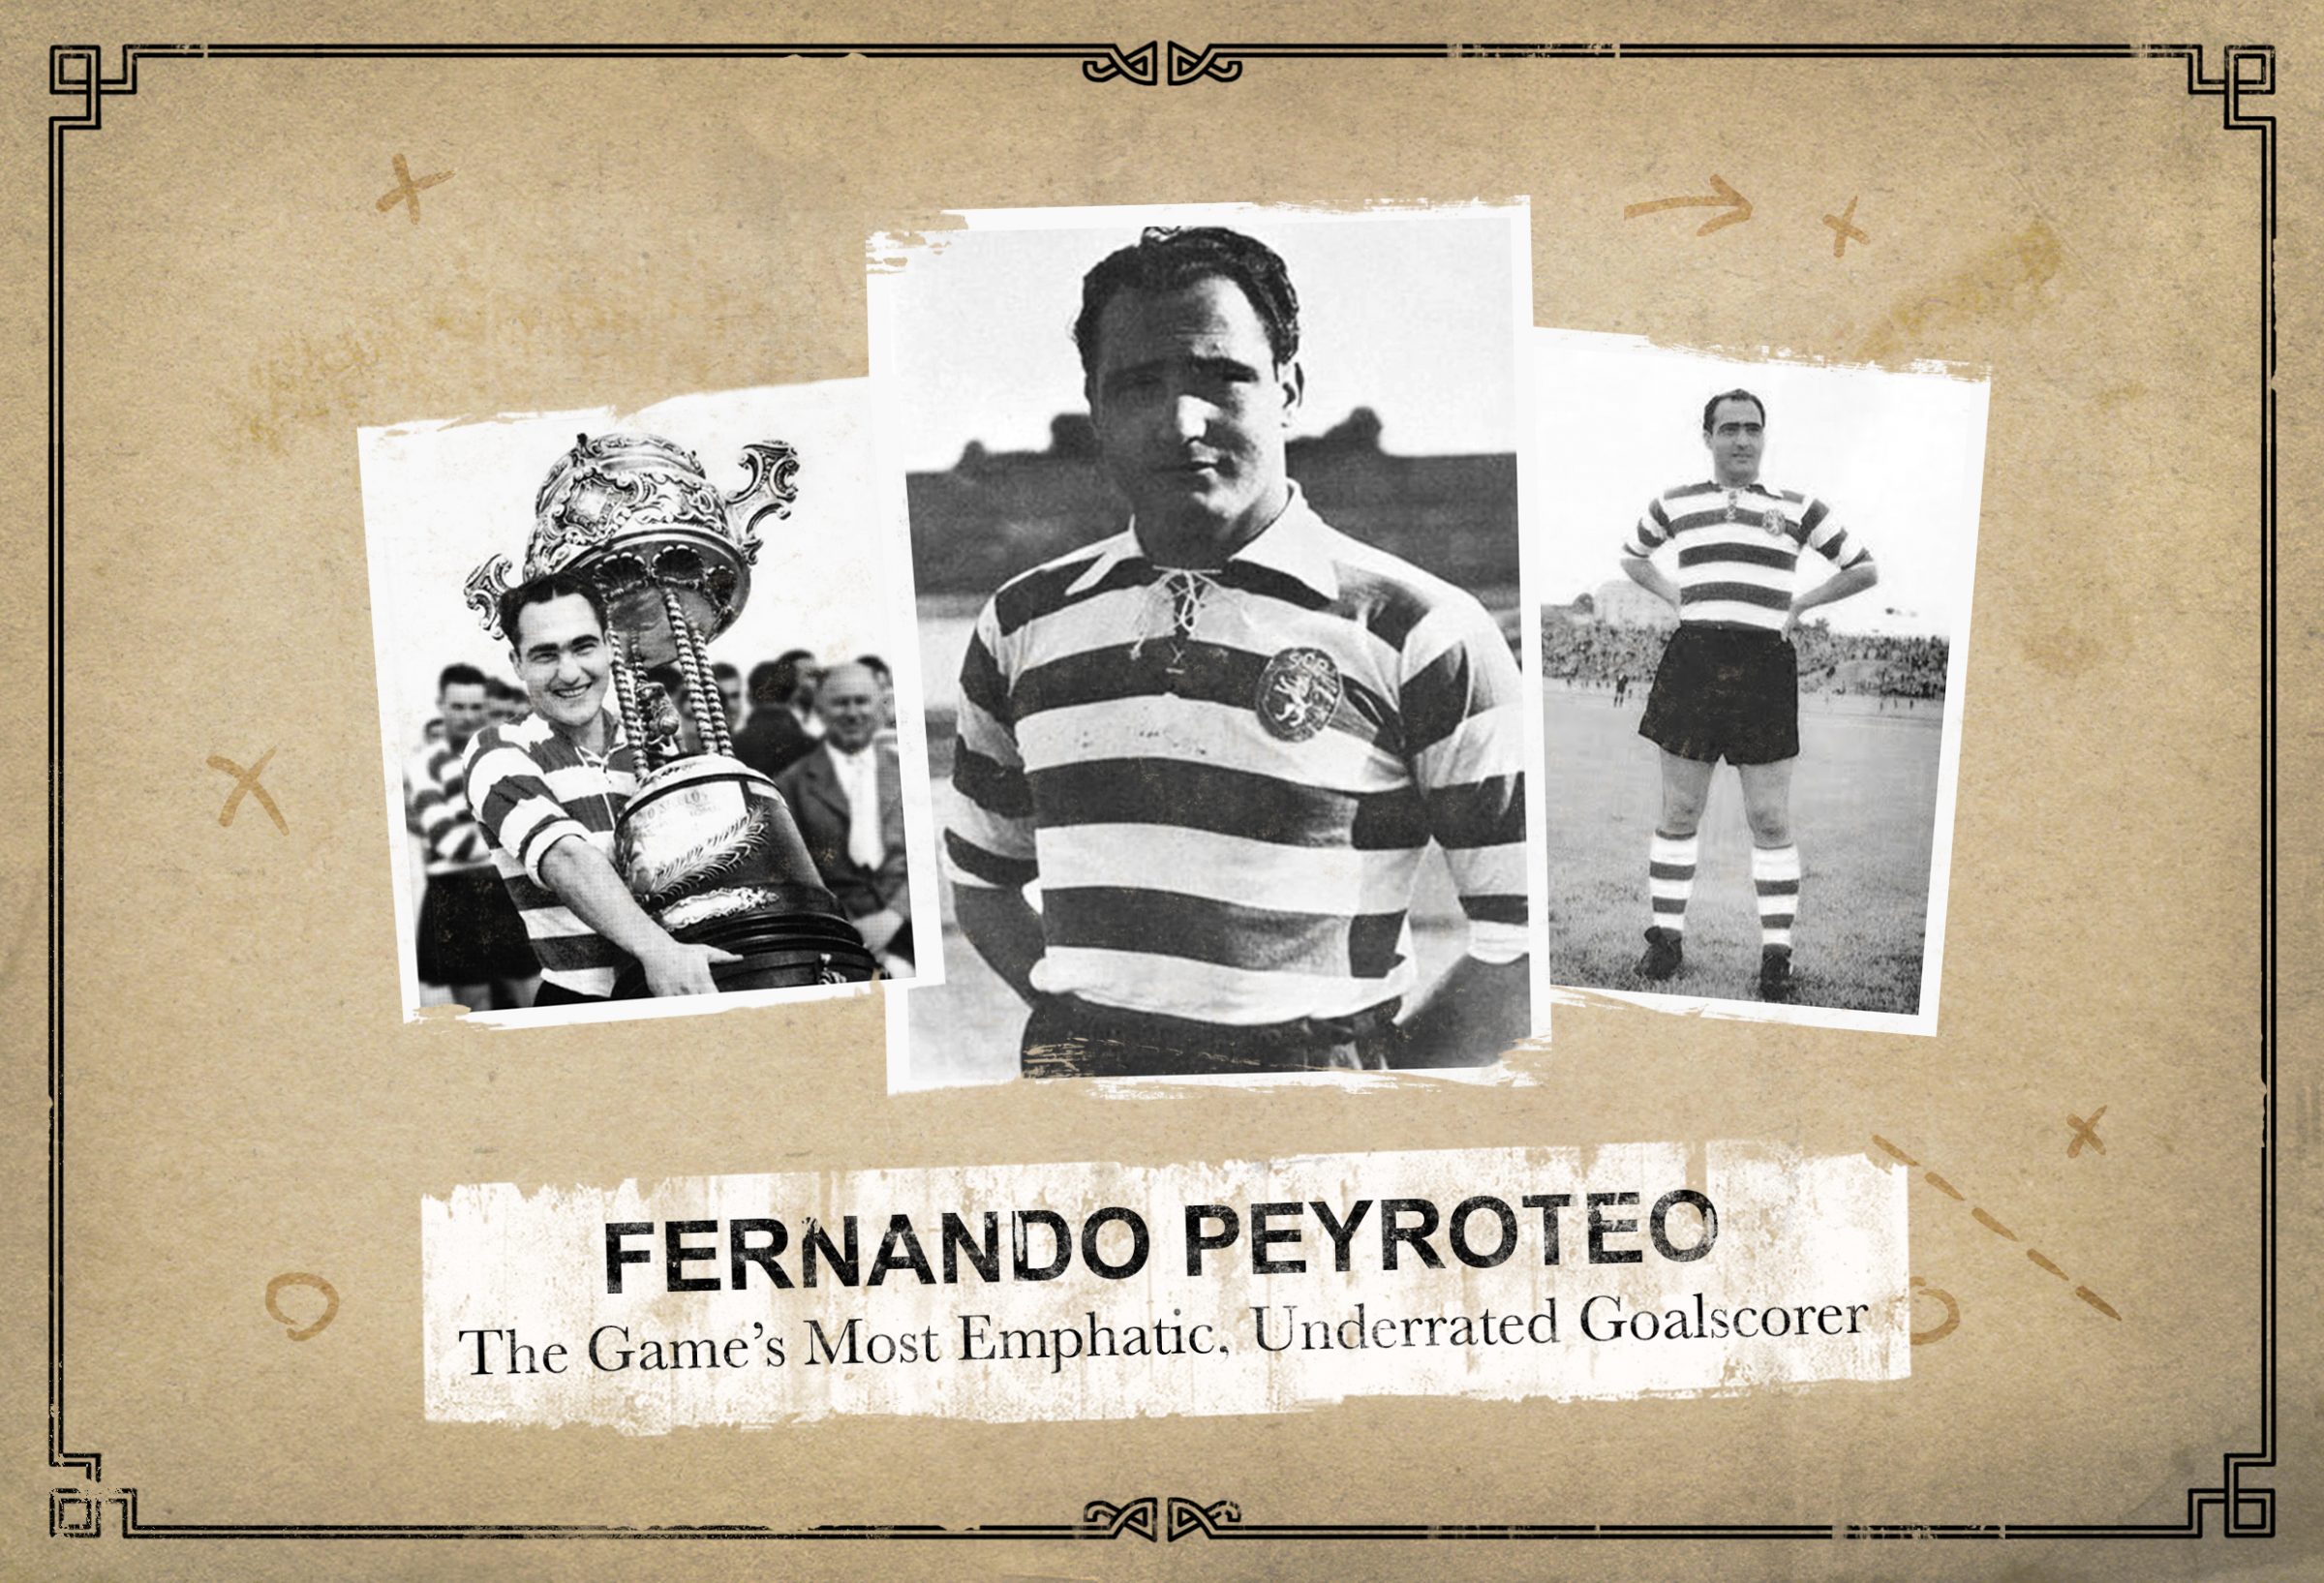 Sporting CP - Hoje celebramos o Centenário do maior goleador de todos os  tempos. Sabe mais sobre Fernando Peyroteo em www.sporting.pt/peyroteo